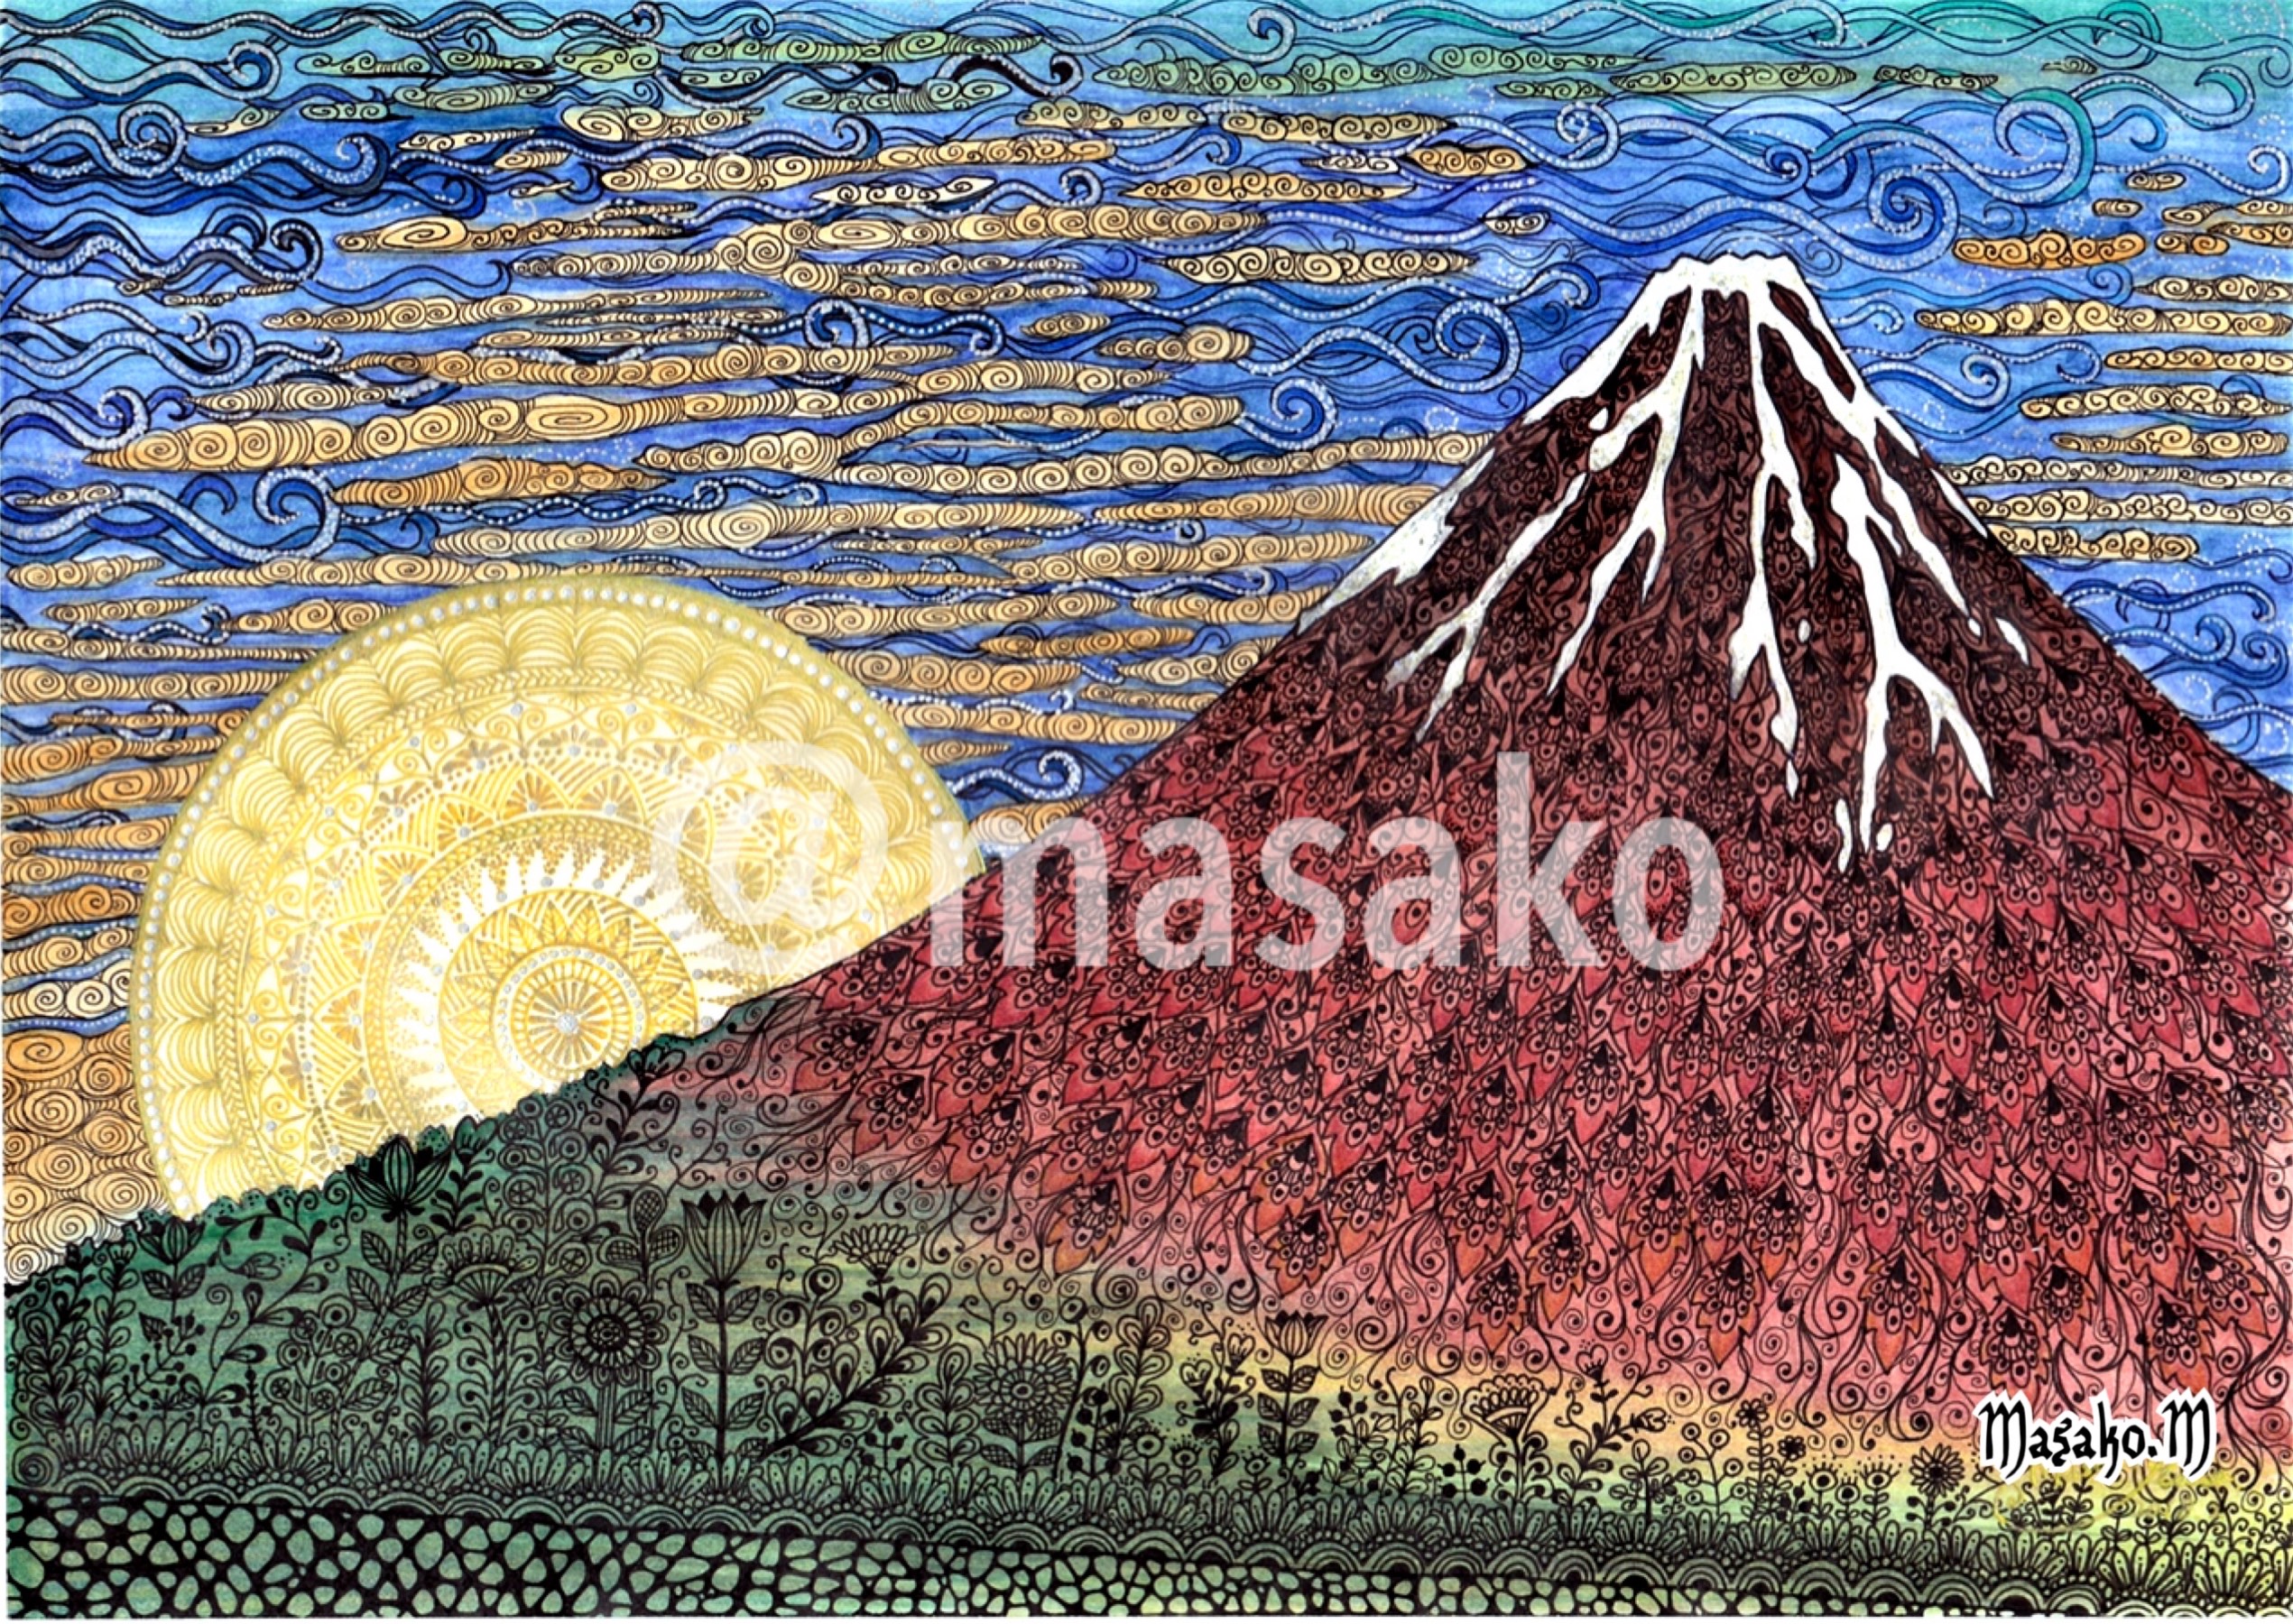 B5 手描きイラストプリント 富士山 山 招福 絵 縁起 赤富士 開運の象徴 開運竹 魚 鯉の滝登り 92 以上節約 絵